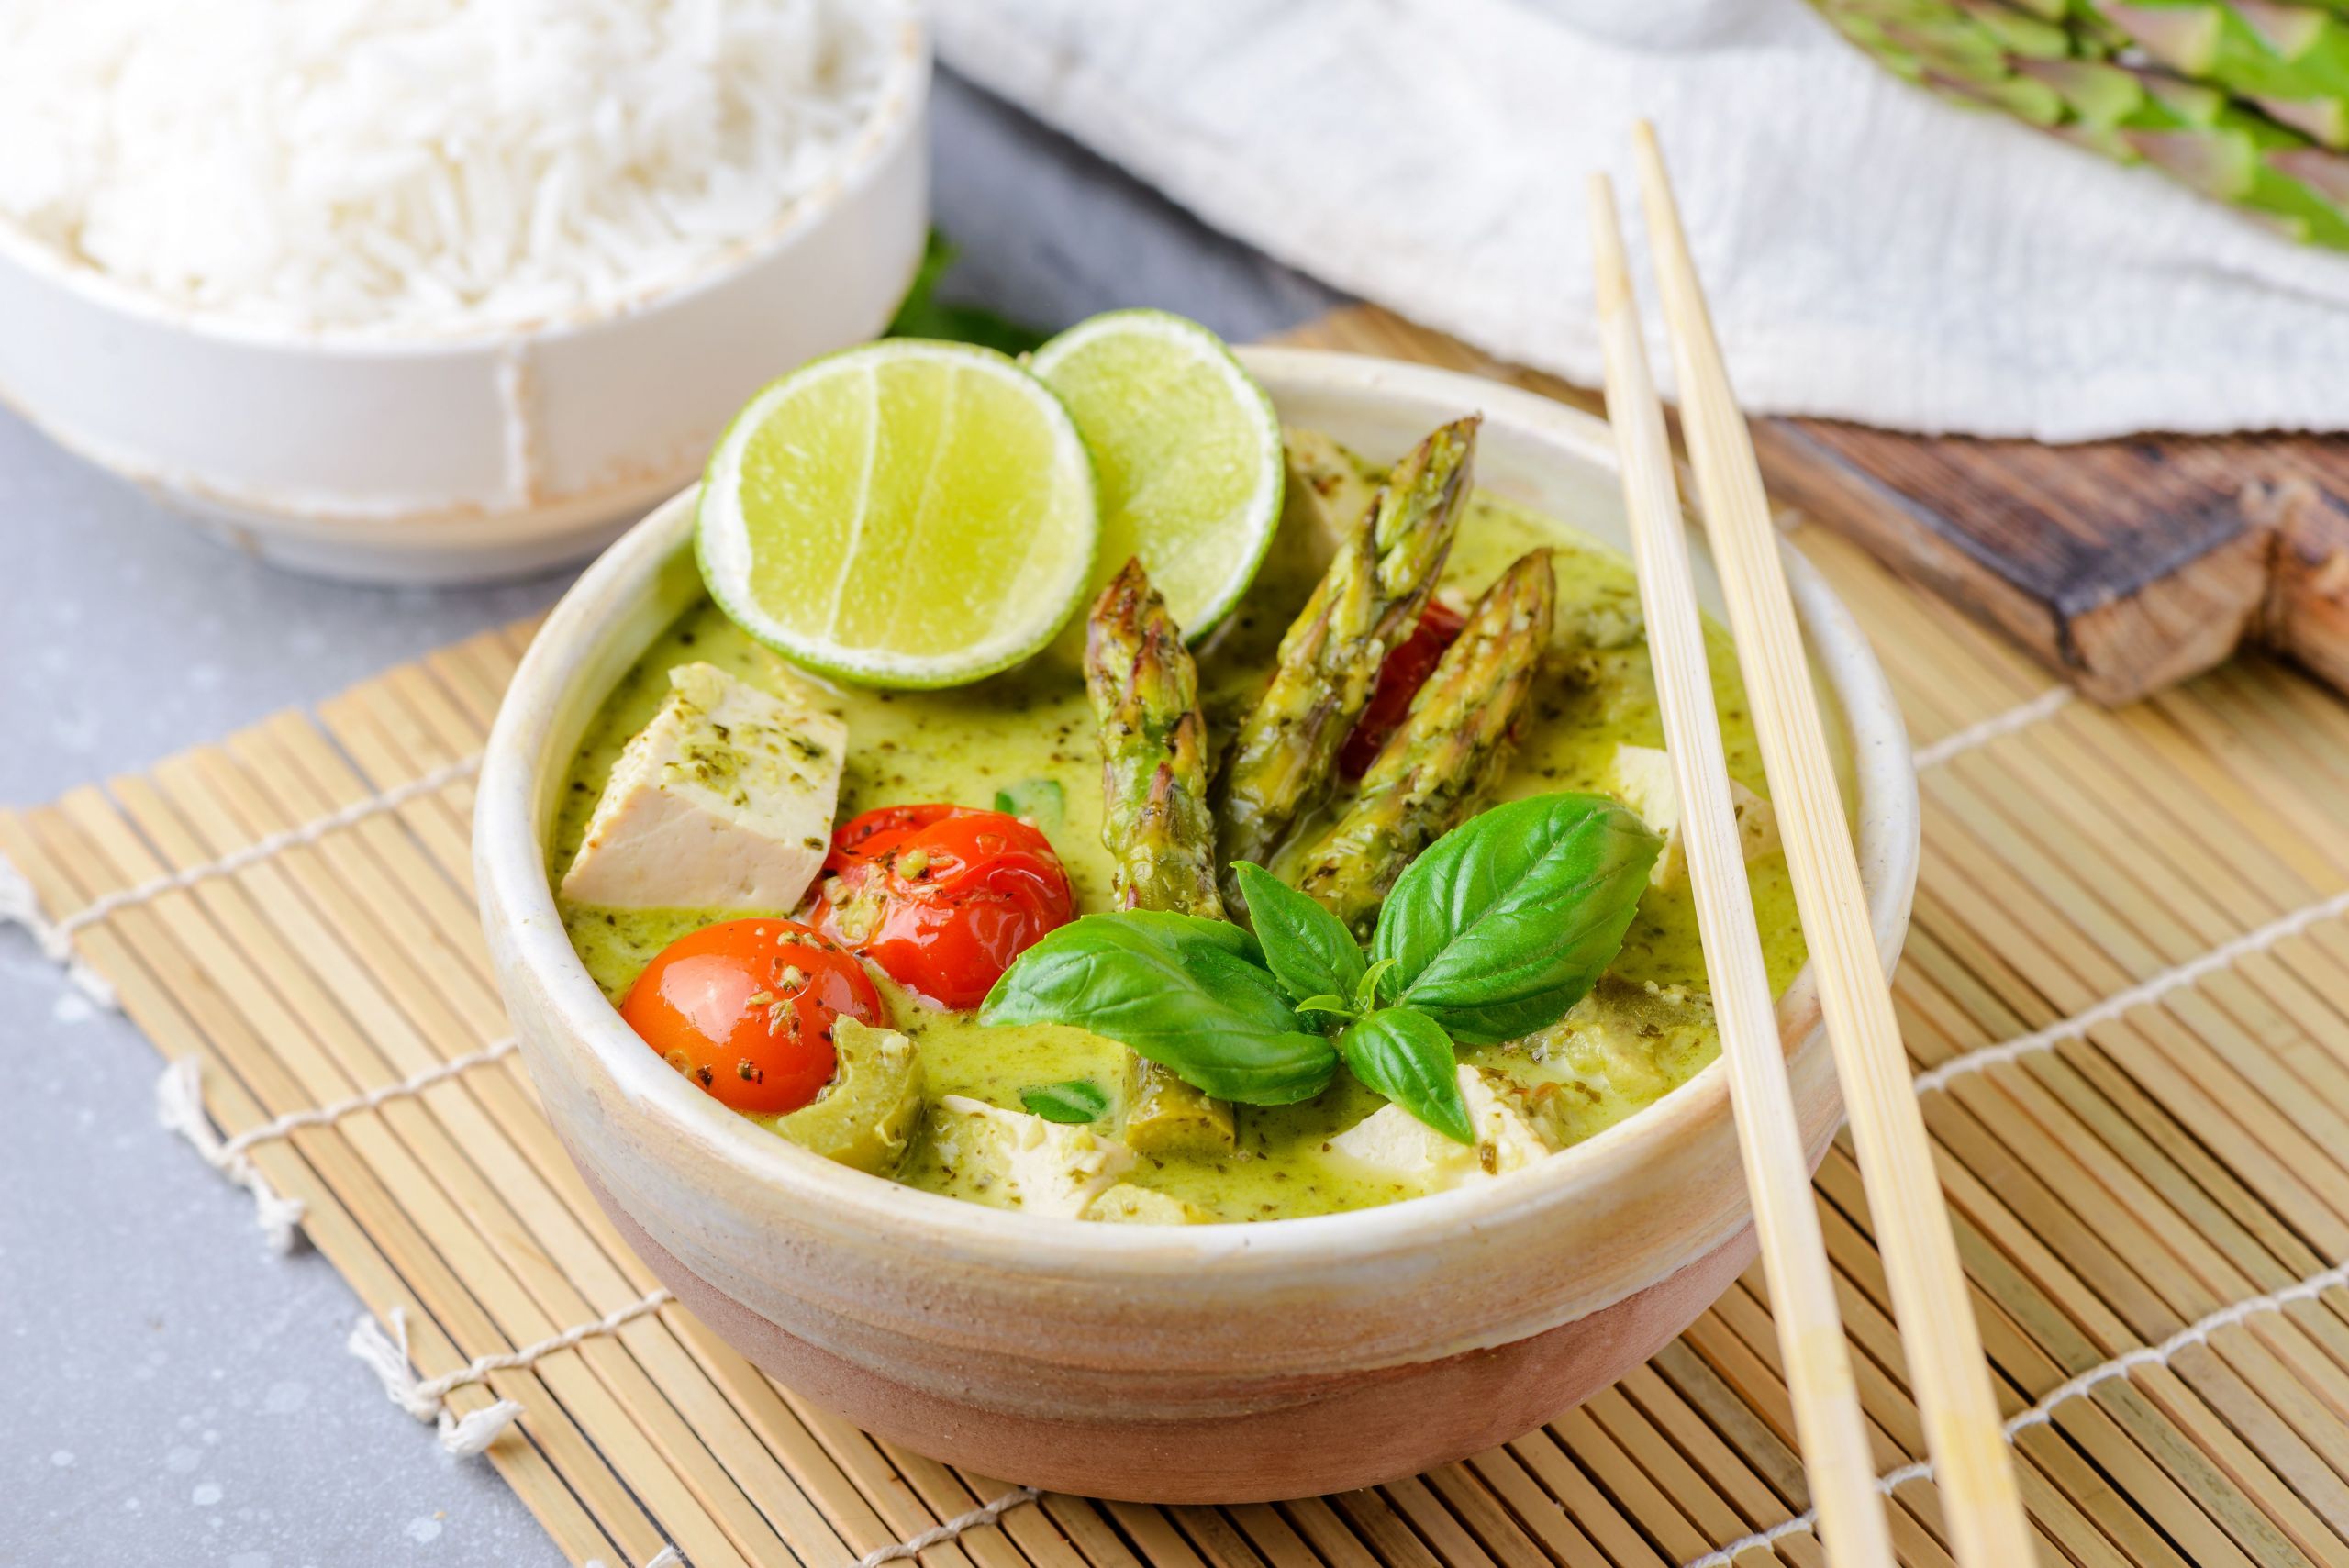 Vegetarian Thai Green Curry Recipes
 Ve arian Thai Green Coconut Curry Recipe